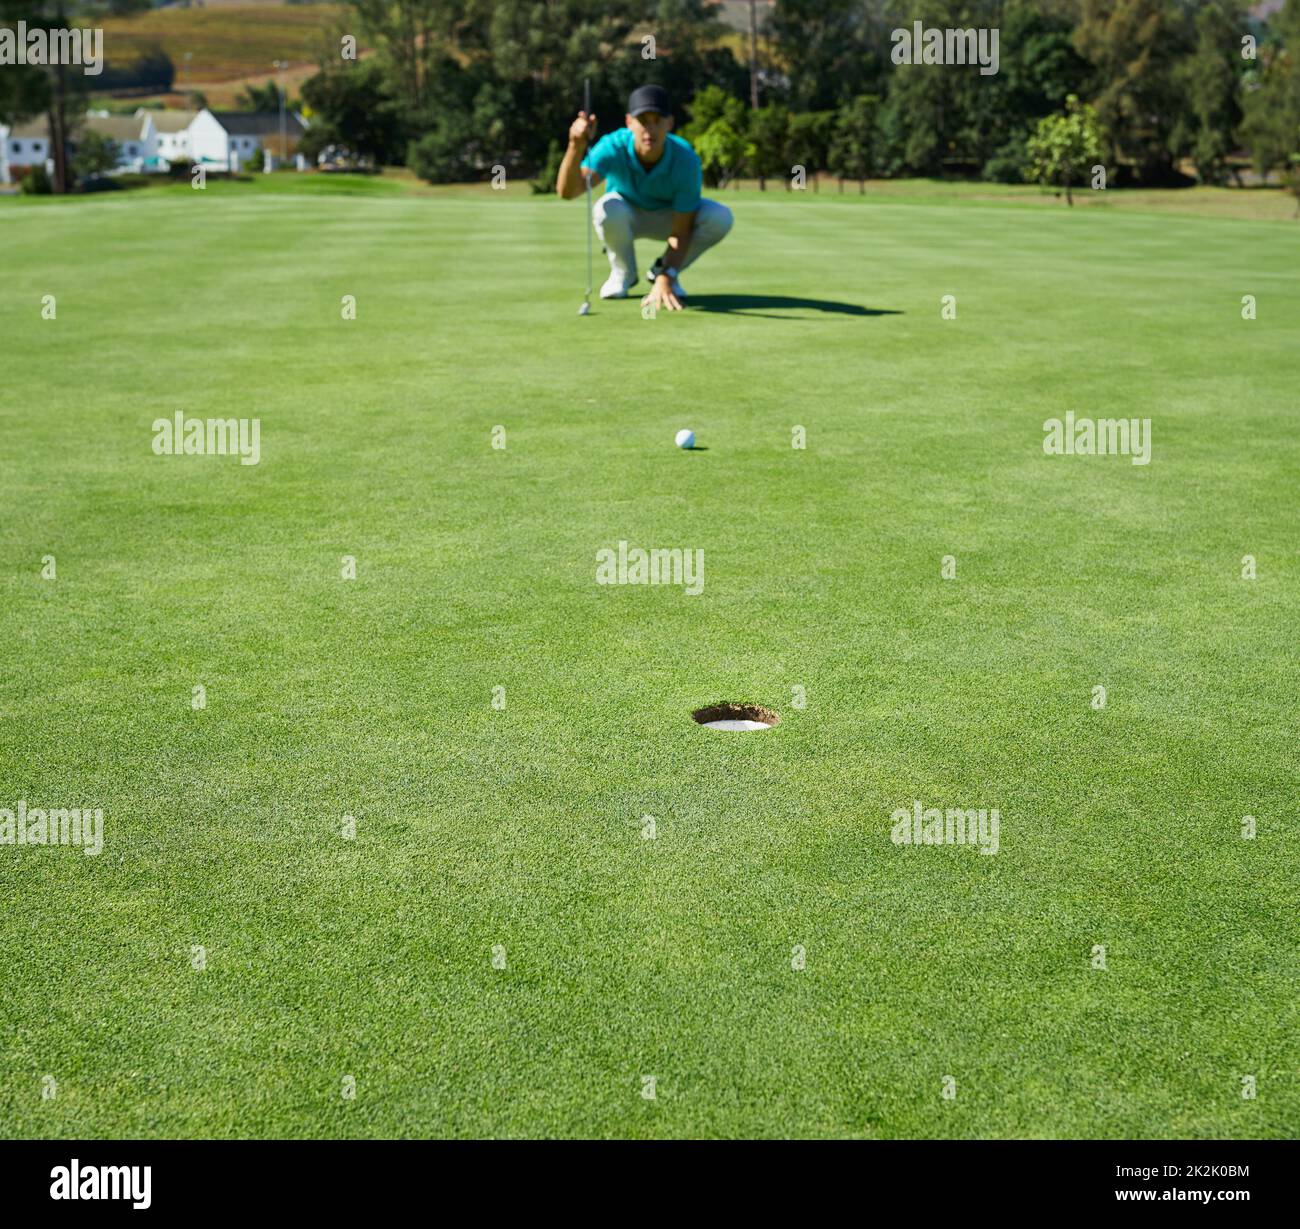 Pour un look simple. Photo d'un jeune homme concentré en attente de la balle d'or qu'il vient de frapper pour aller dans un trou à l'extérieur sur un terrain de golf. Banque D'Images